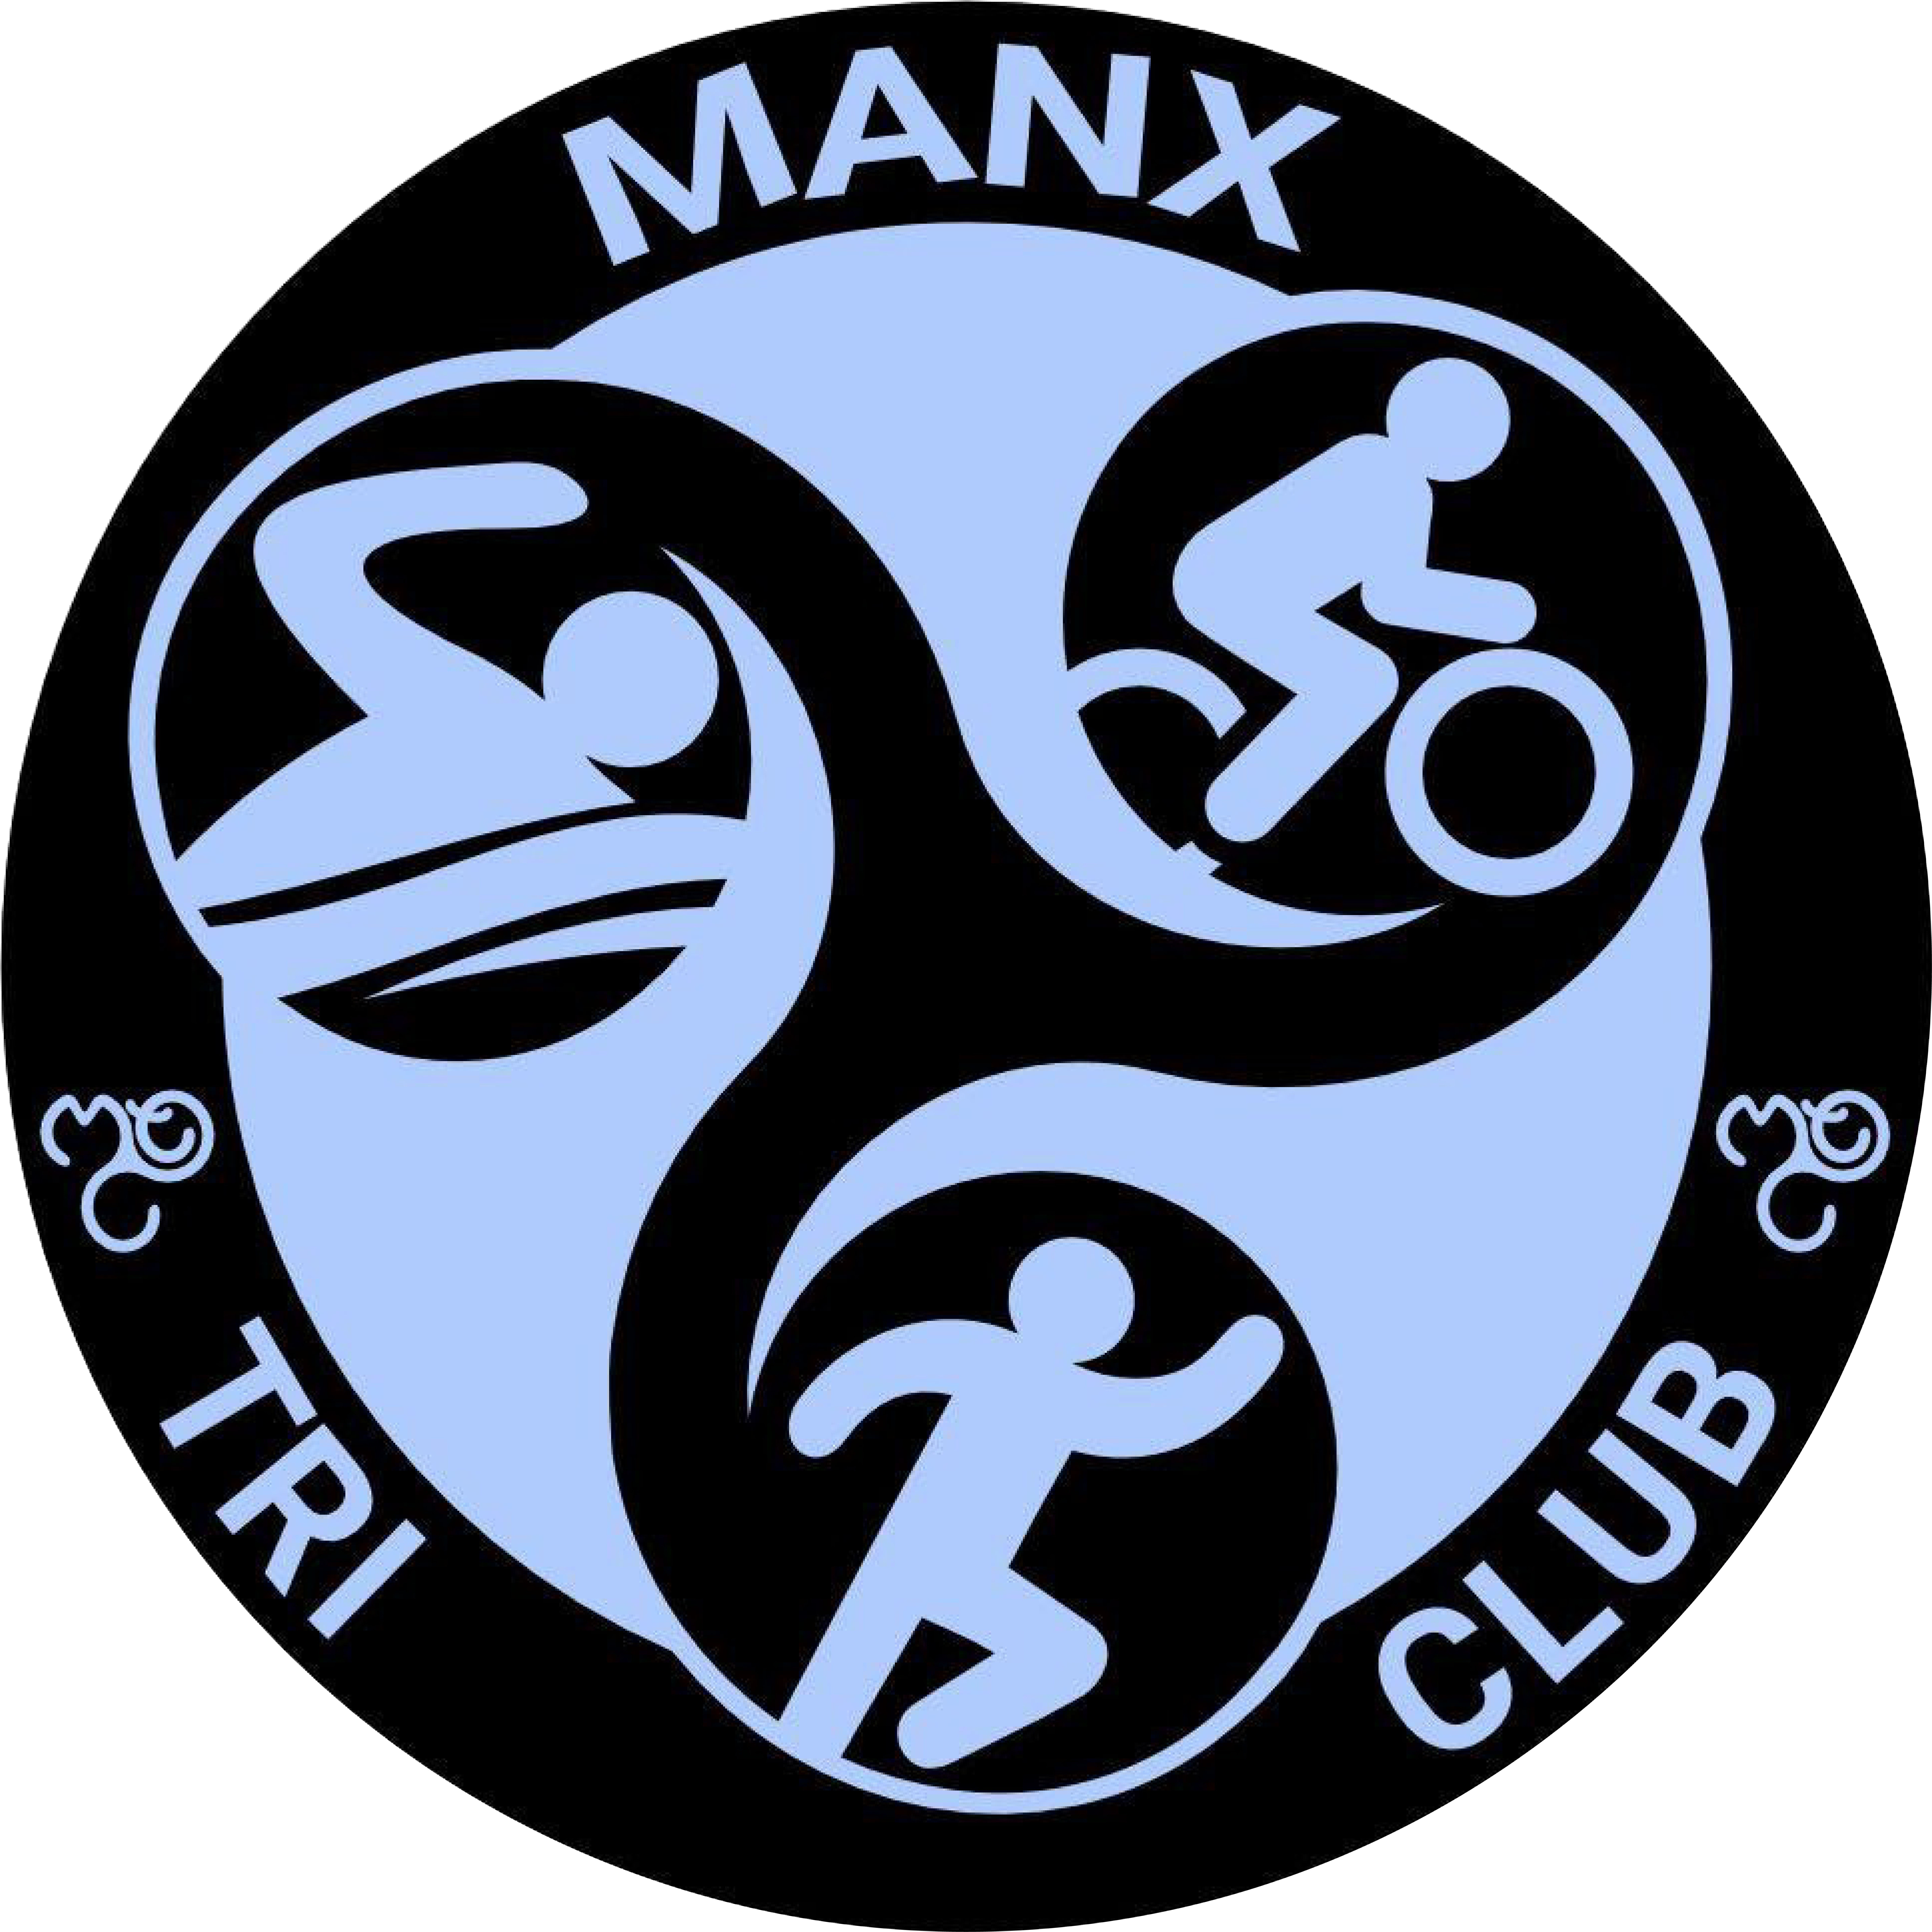 Manx Tri Club